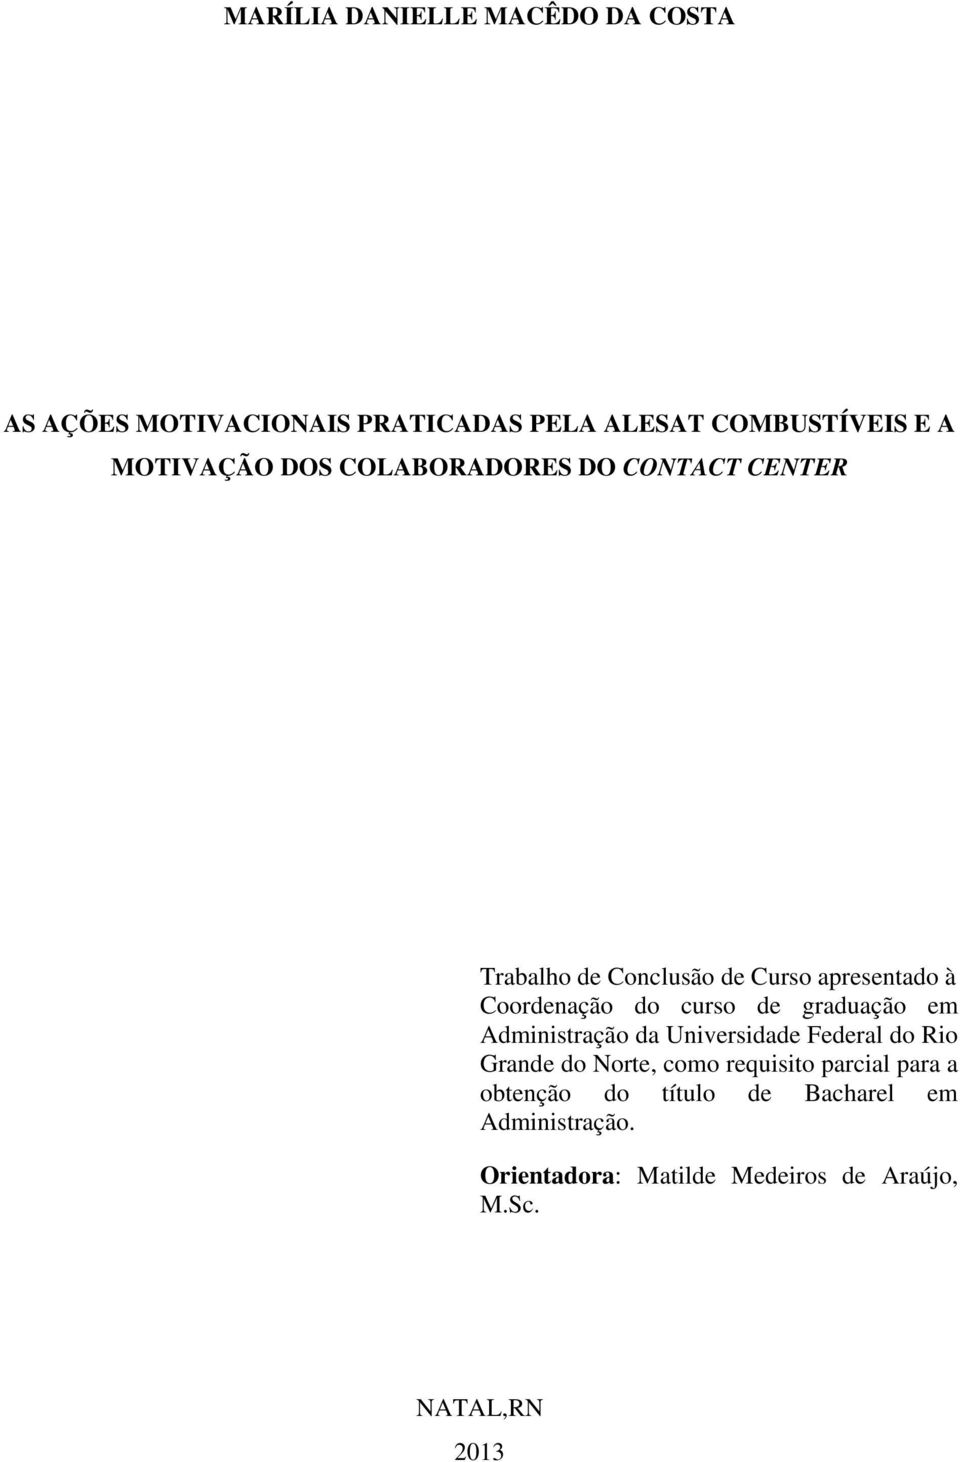 graduação em Administração da Universidade Federal do Rio Grande do Norte, como requisito parcial para a